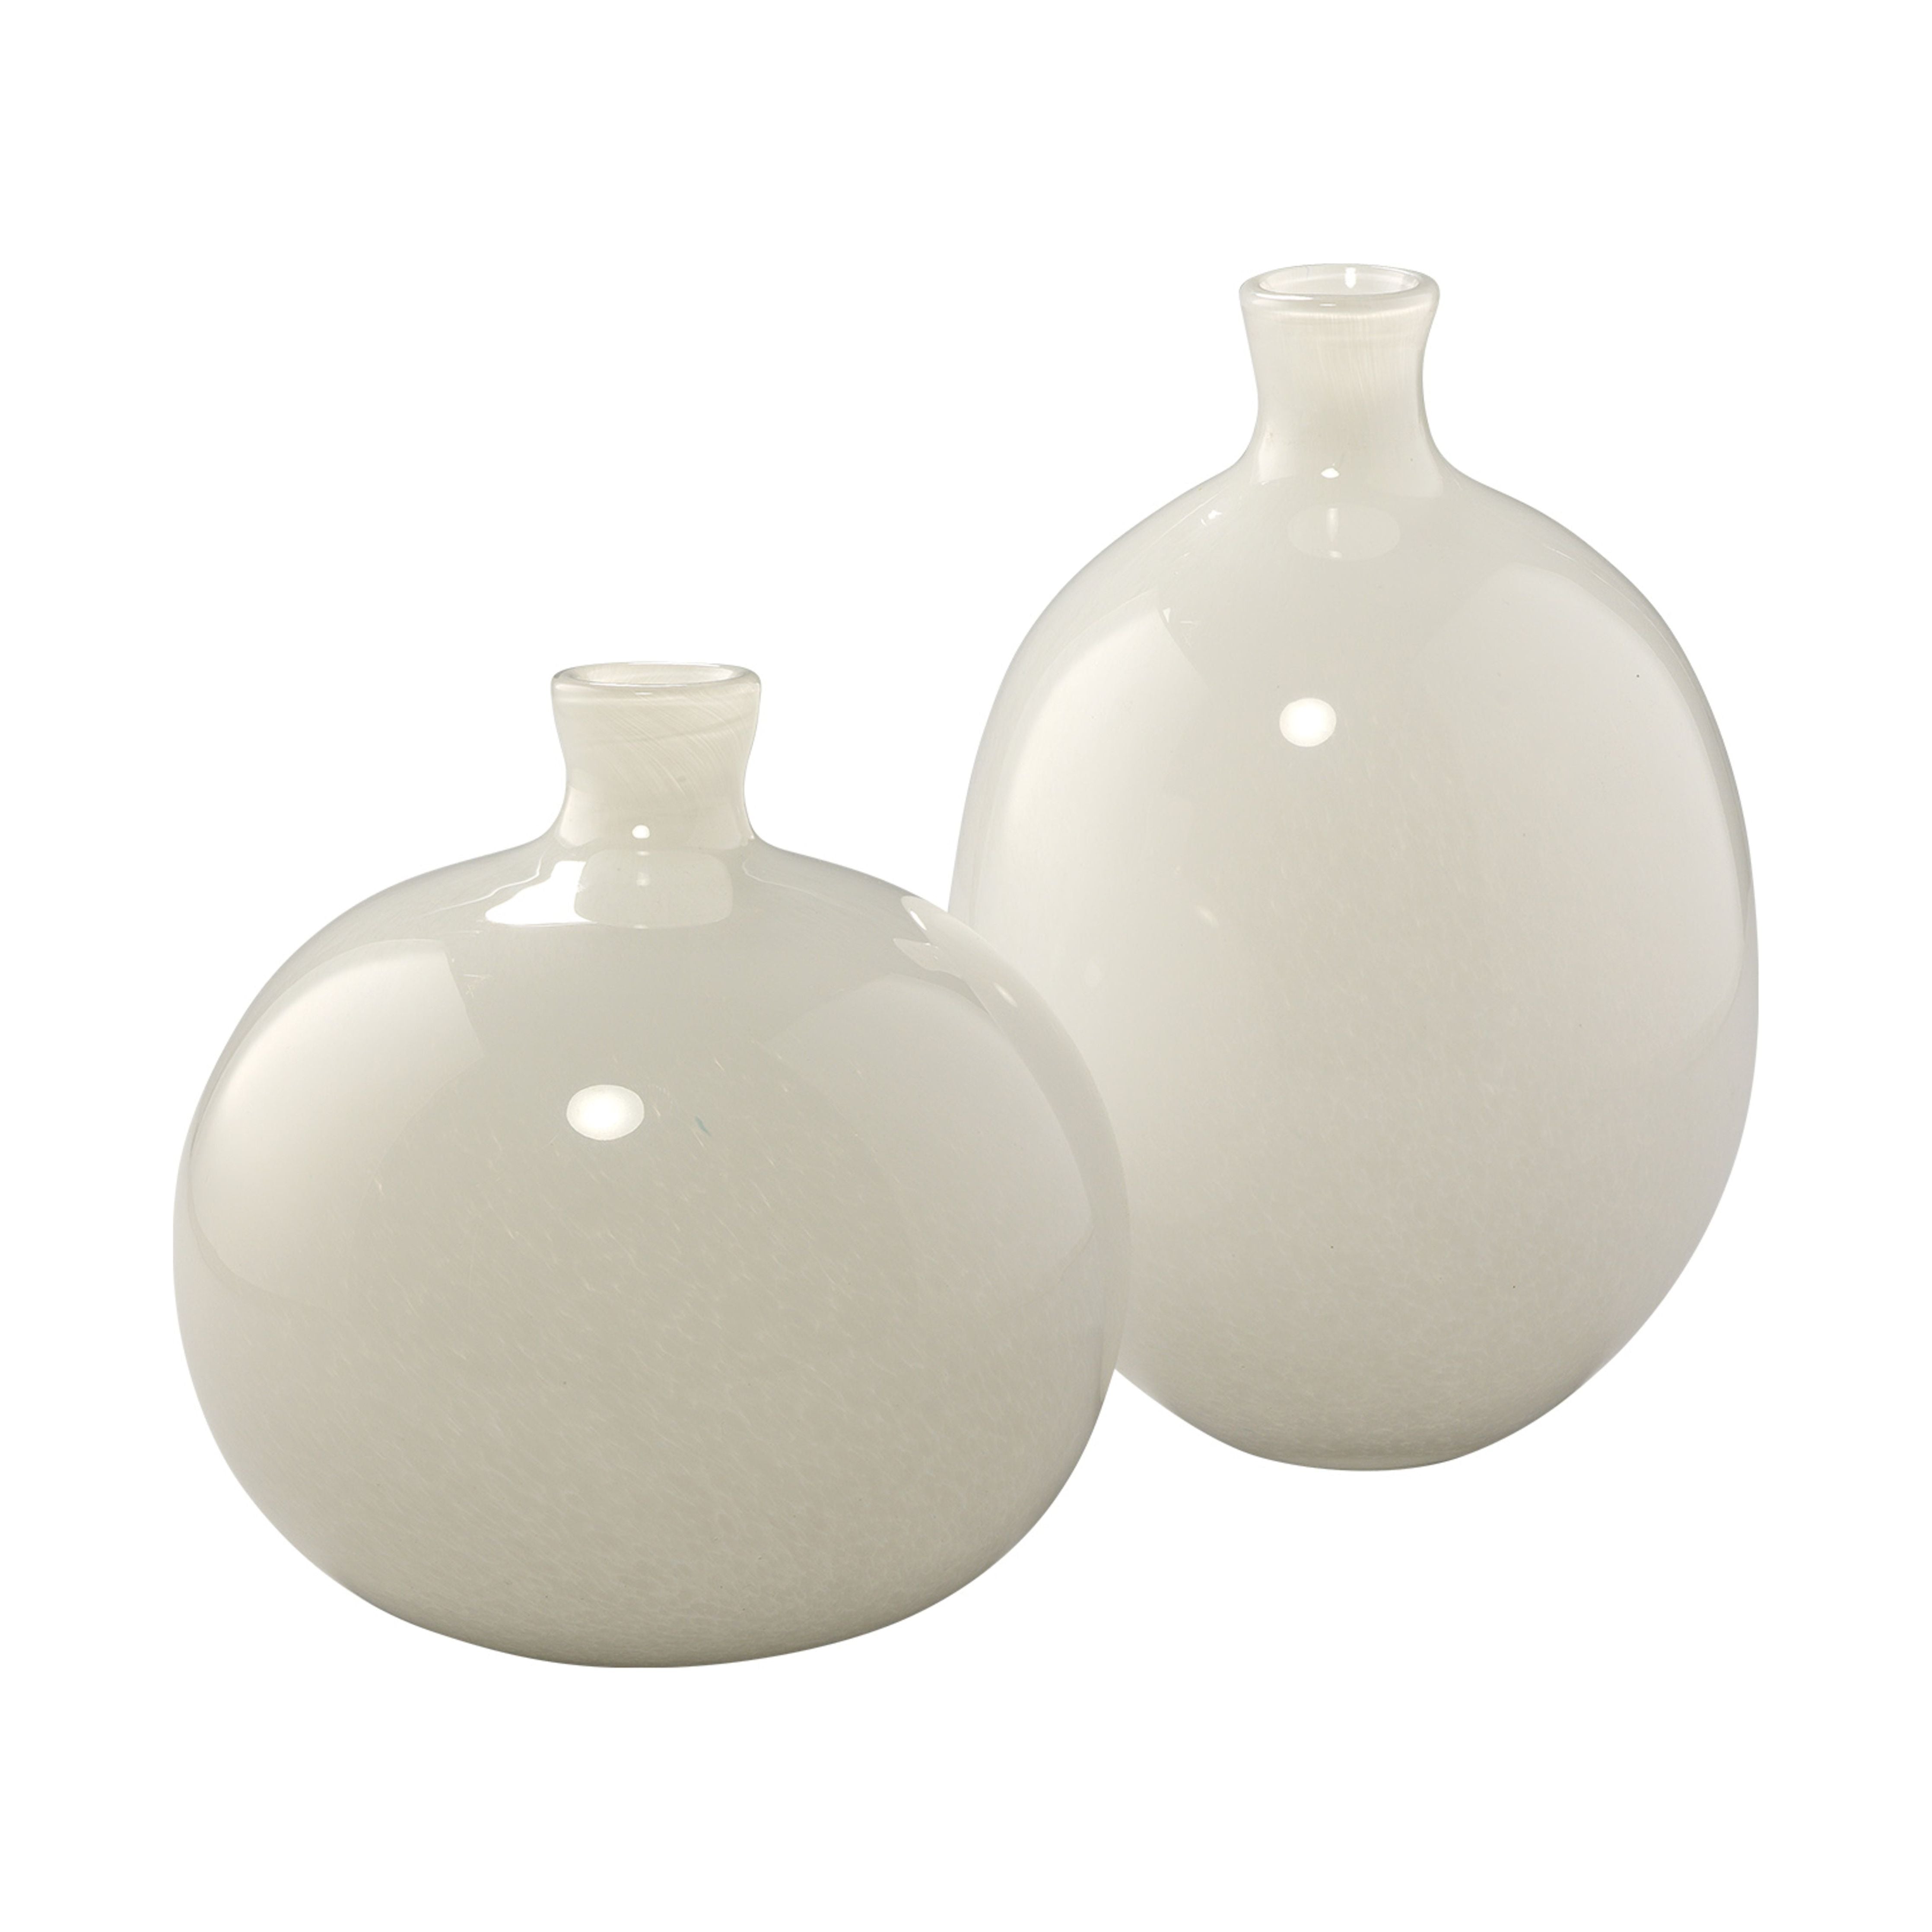 Jamie Young Company - 7MINX-VAWH - Minx Decorative Vases (set of 2) - Minx - White